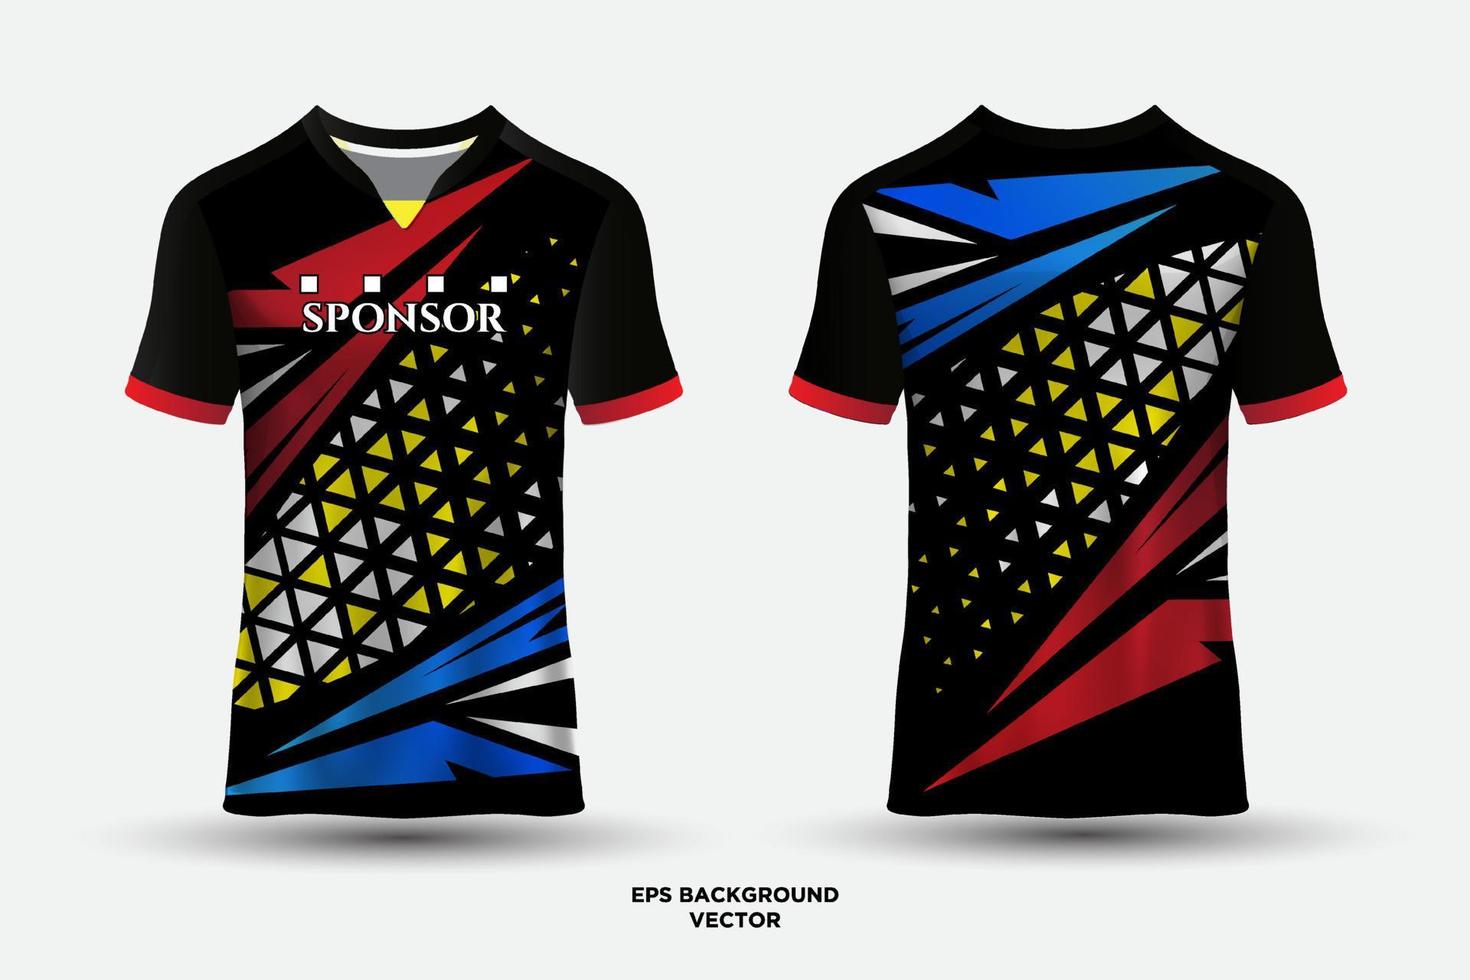 prachtig design jersey t-shirt sport geschikt voor racen, voetbal, e-sporten. vector